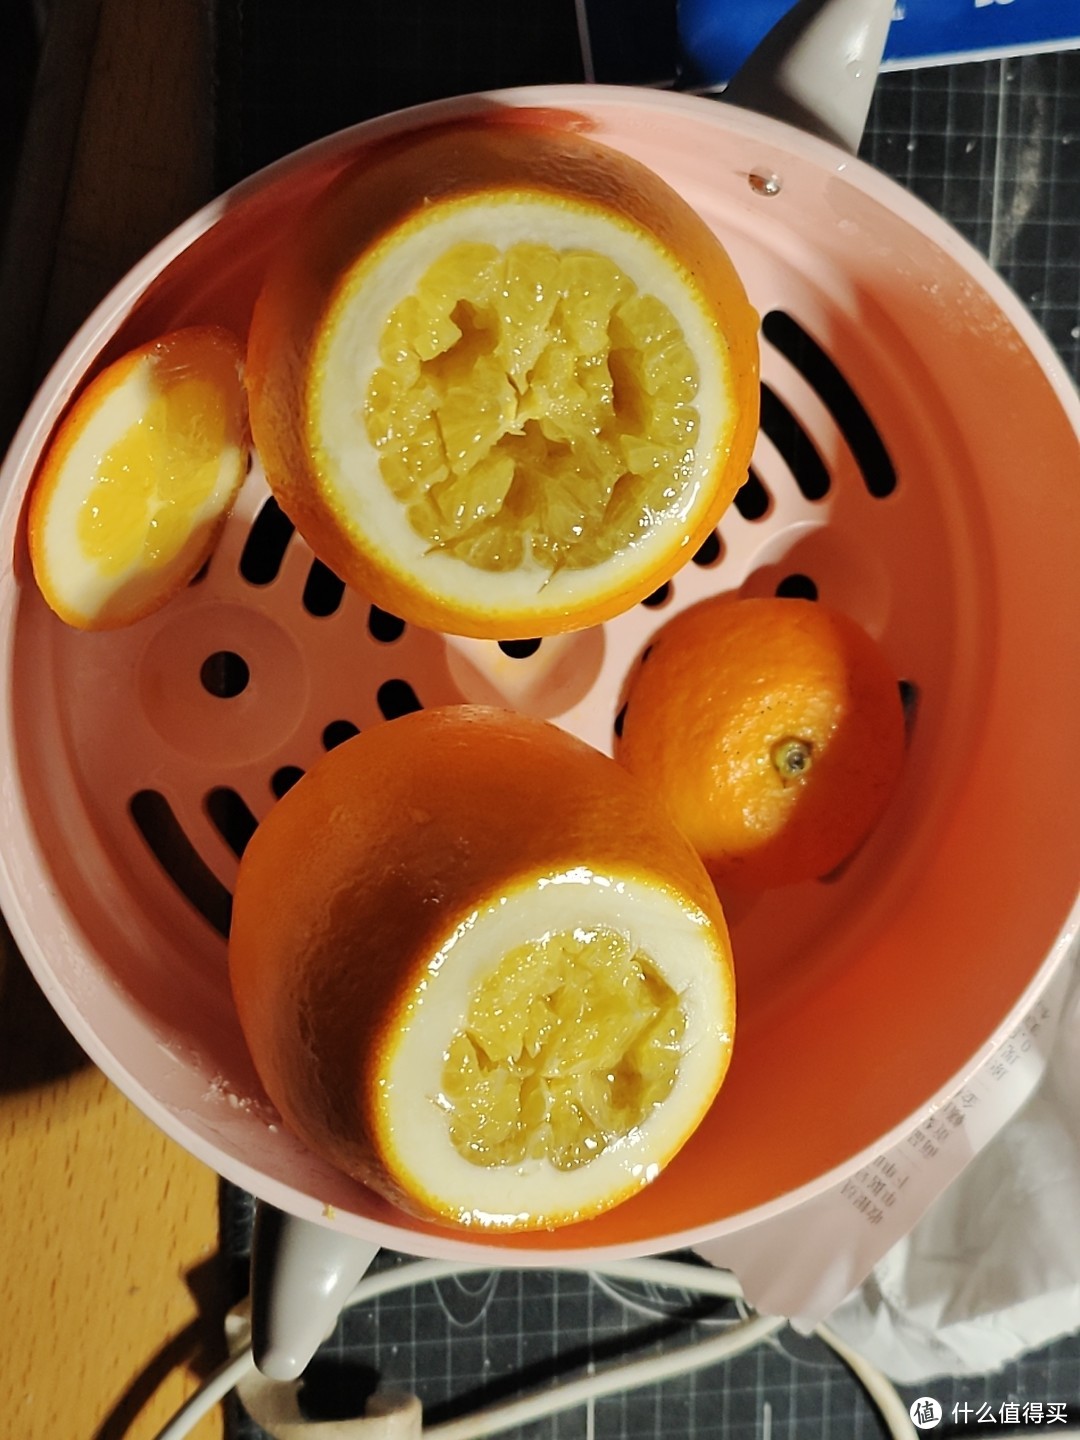 双十二买的橘子解决了我喉咙吞刀子的痛苦